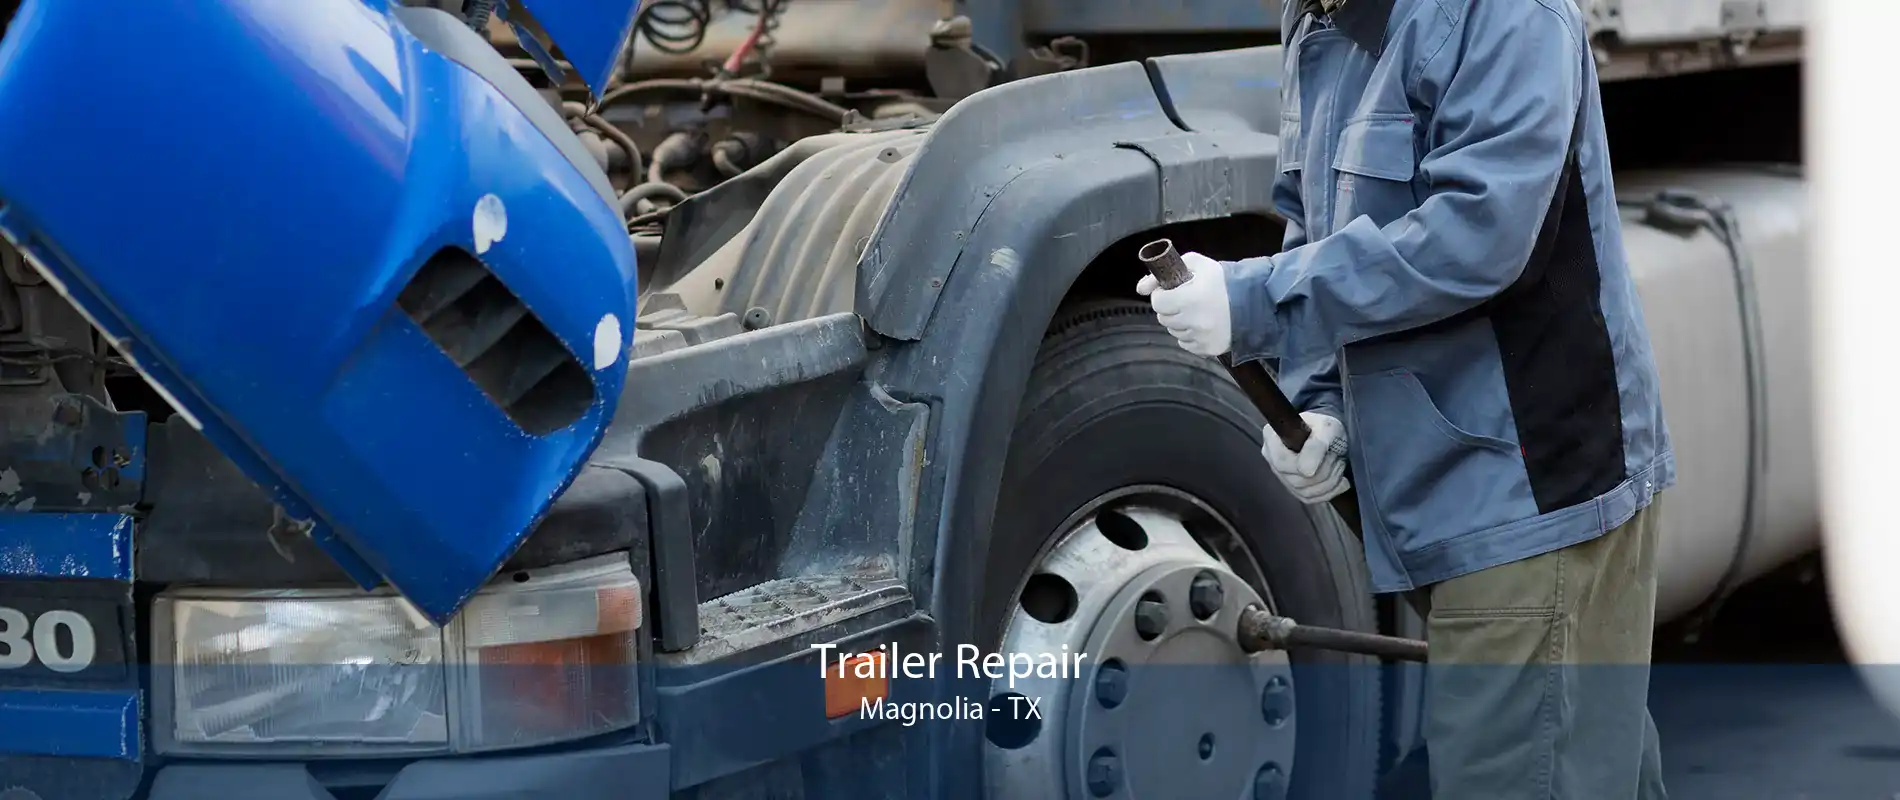 Trailer Repair Magnolia - TX